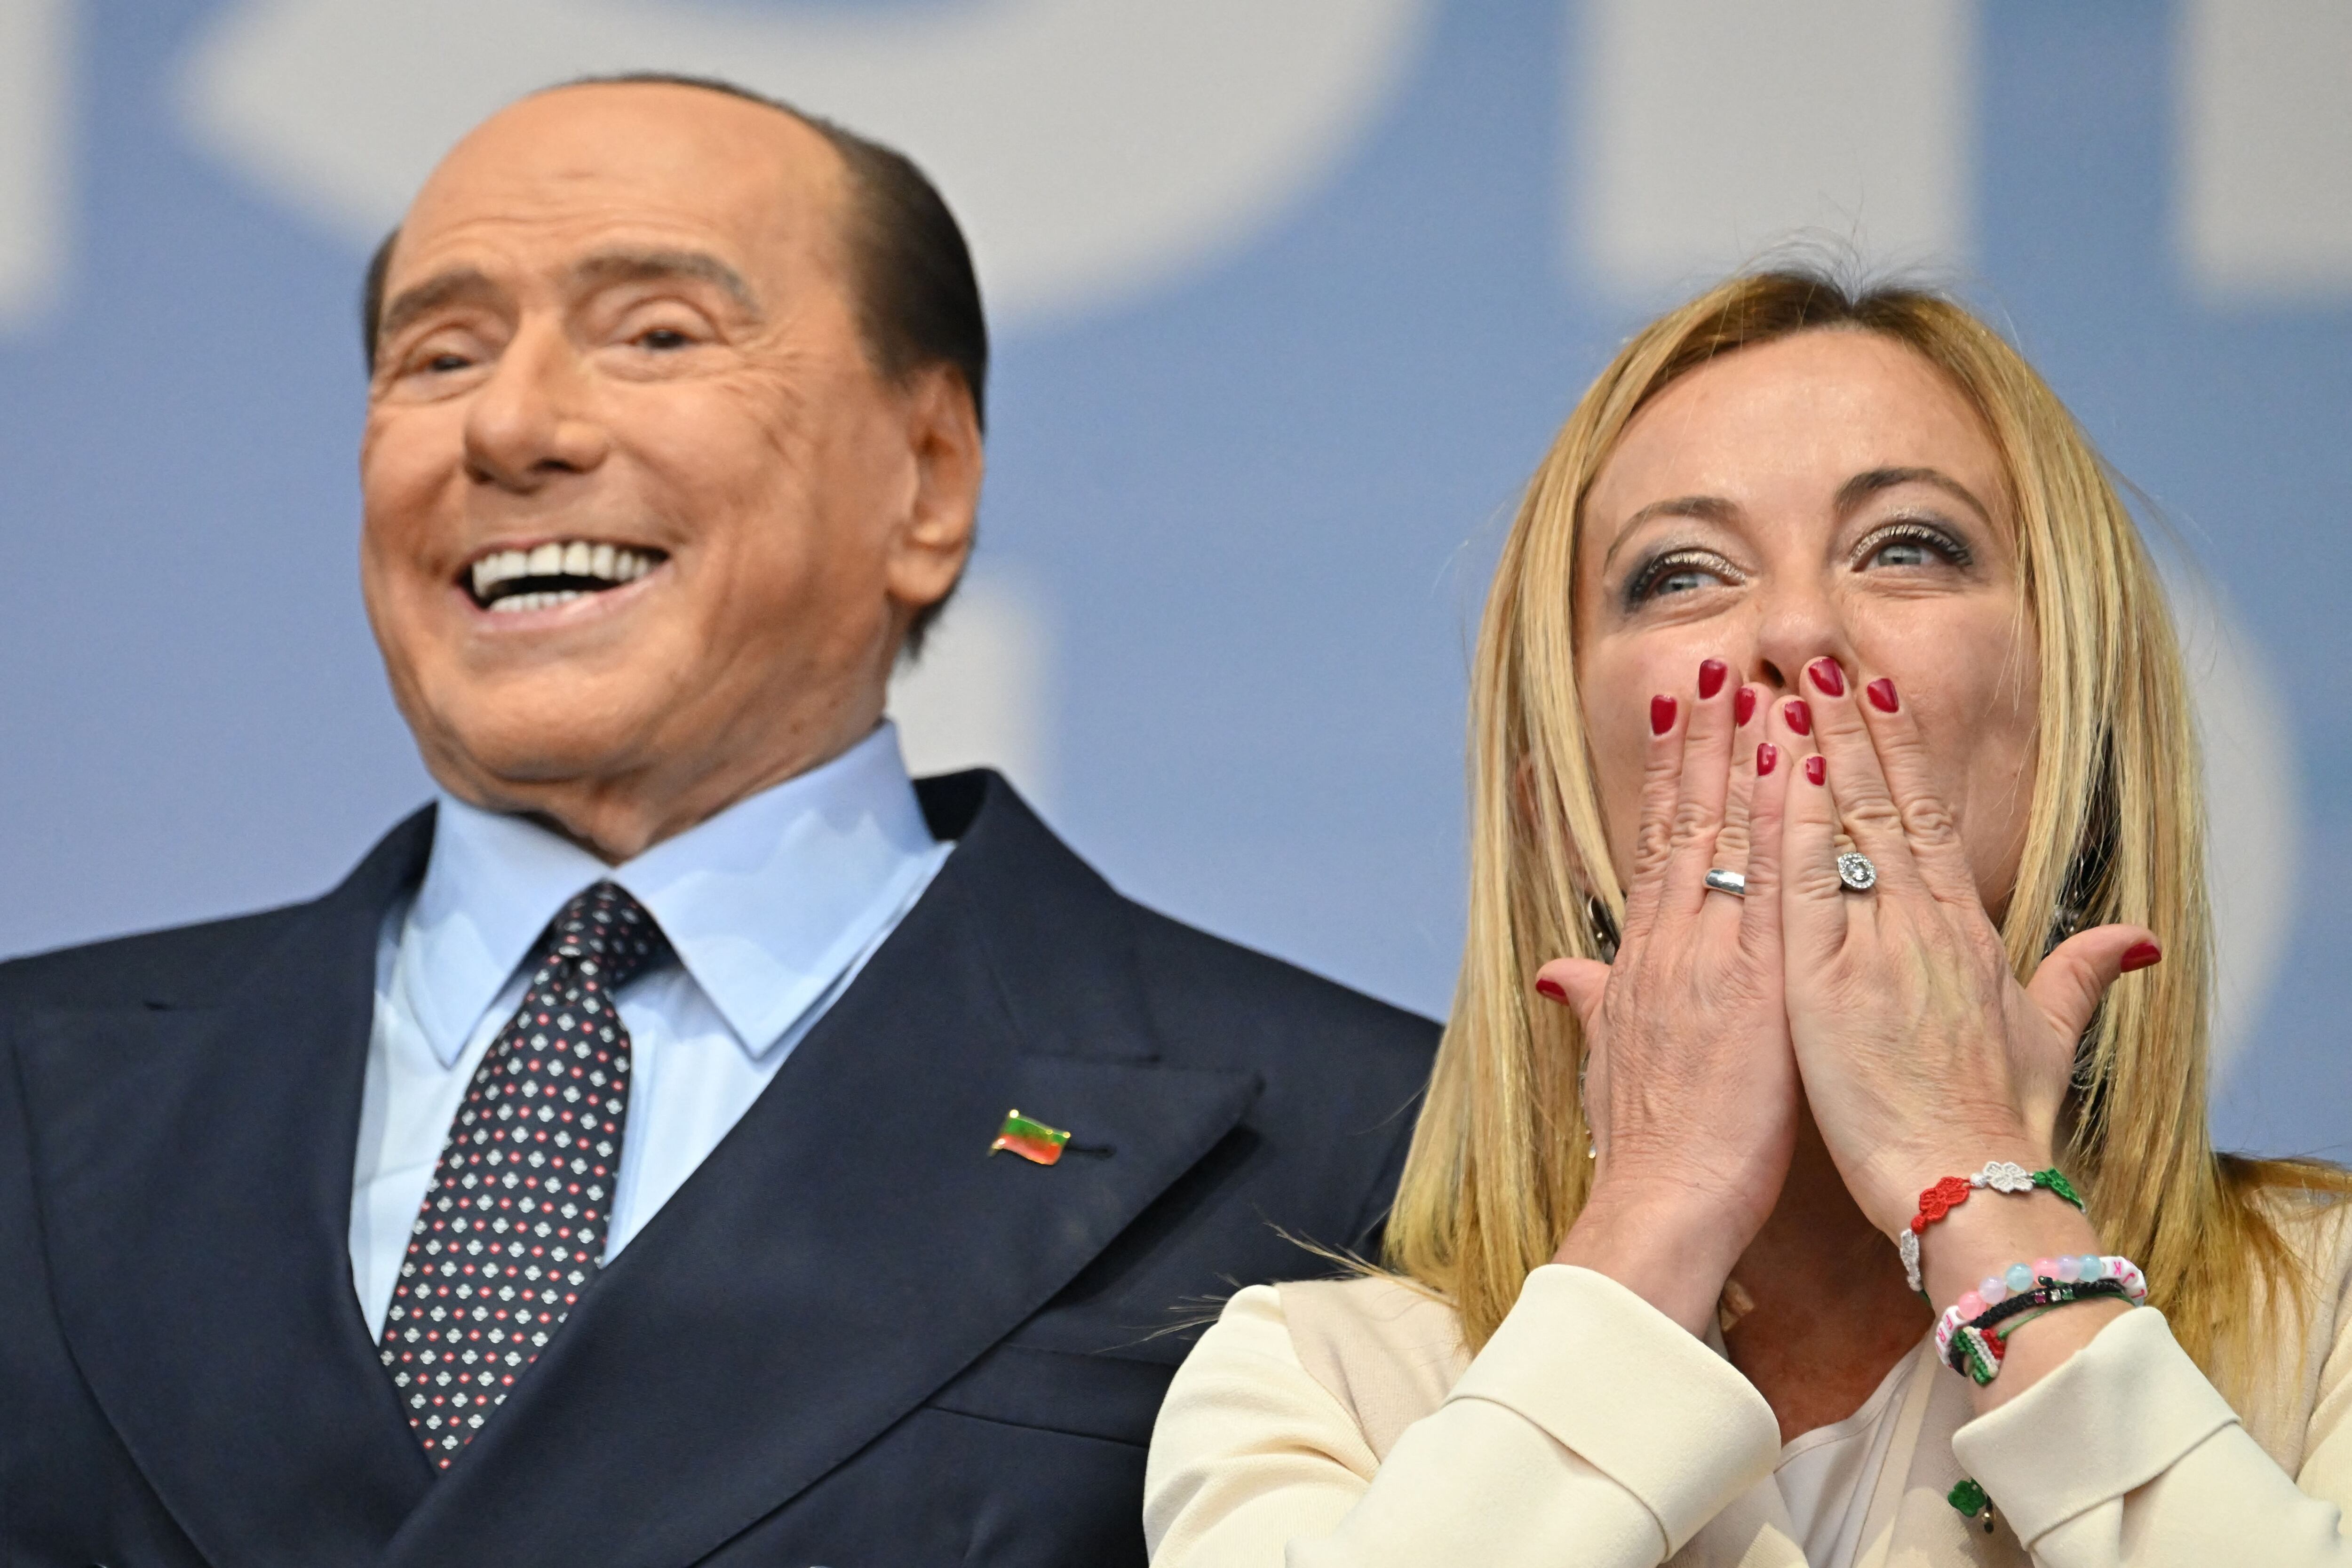 ‘La Meloni’, como la llaman en Italia, se presenta aliada con la formación conservadora Forza Italia (FI) del anciano magnate Silvio Berlusconi.